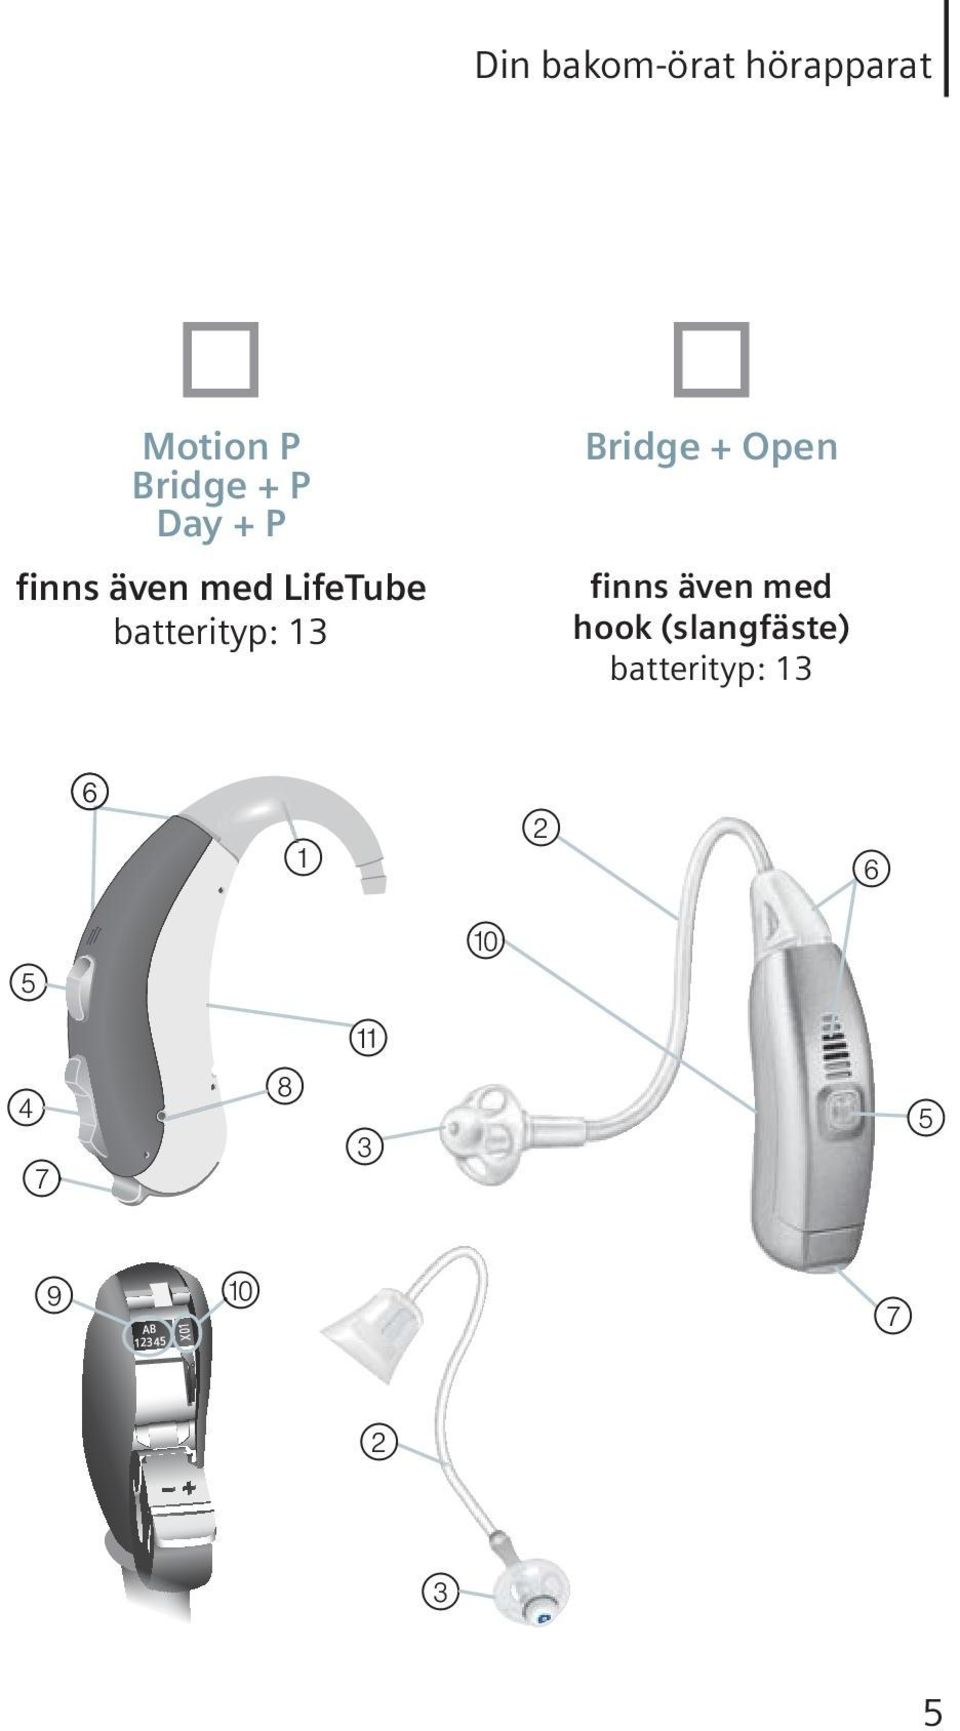 Bakom-örat hörapparat - PDF Gratis nedladdning